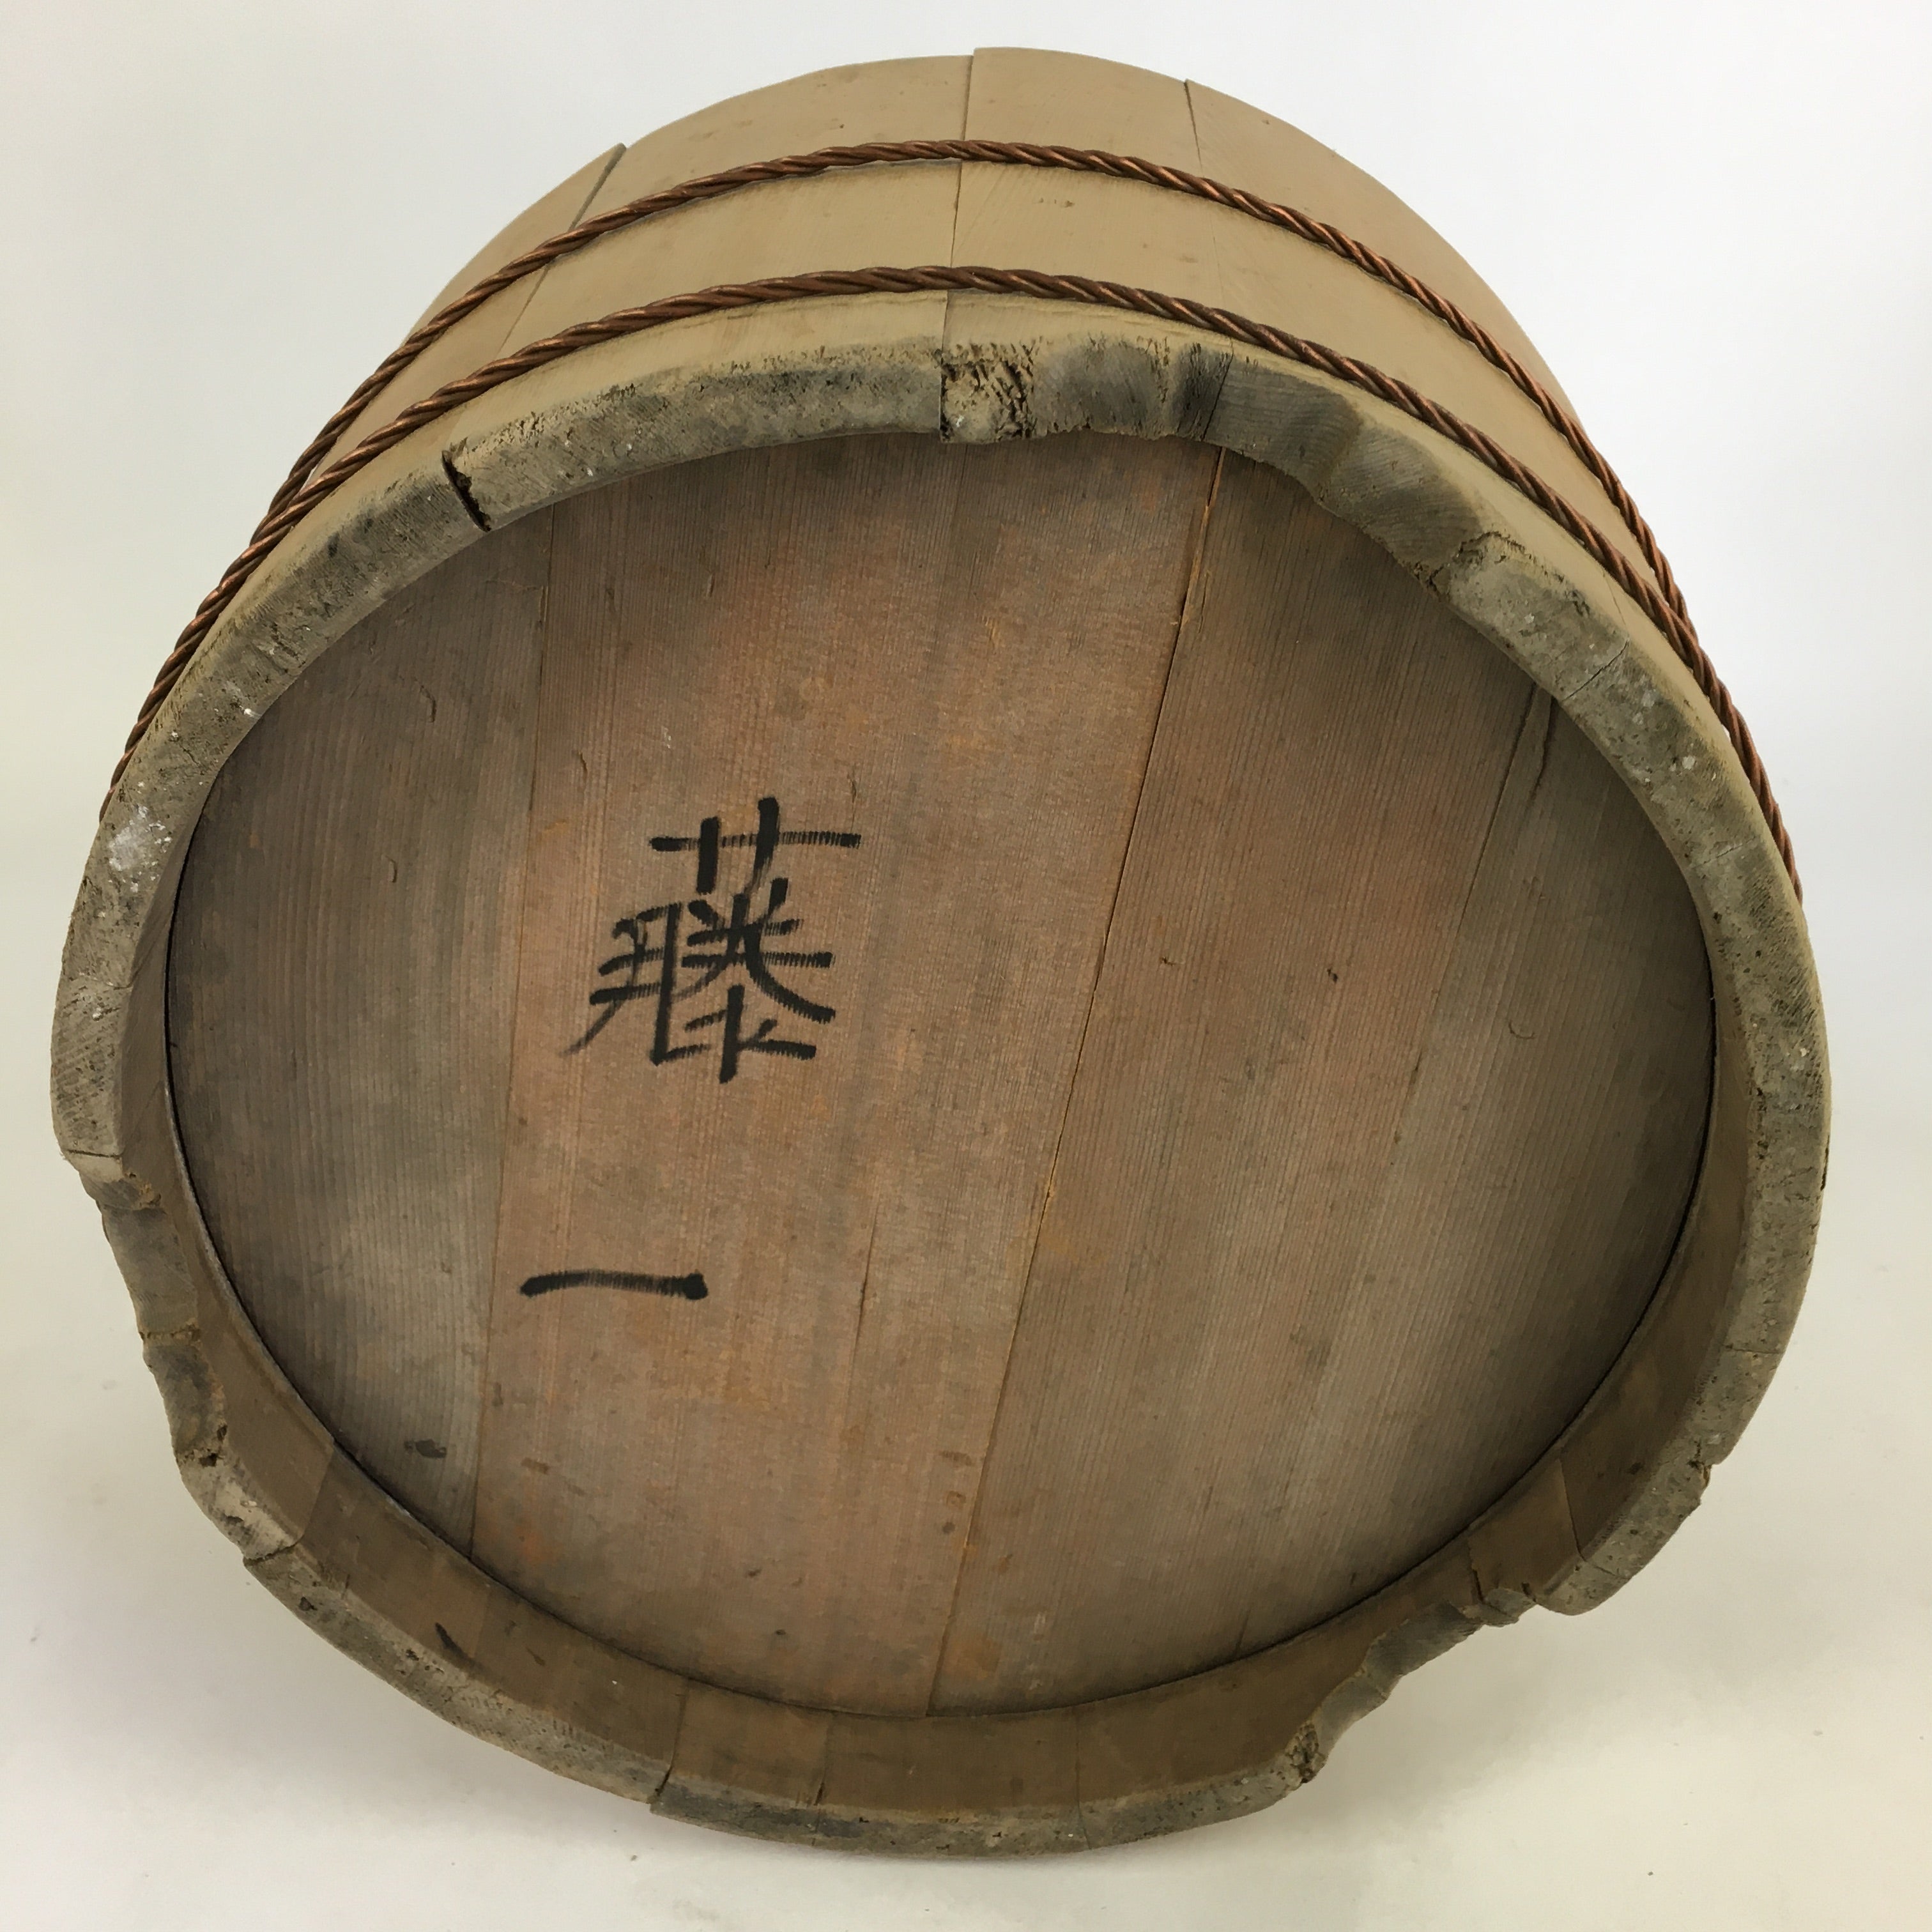 Japanese Handmade Wooden Lidded Bucket Oke Vtg Sushi Pickles JK307